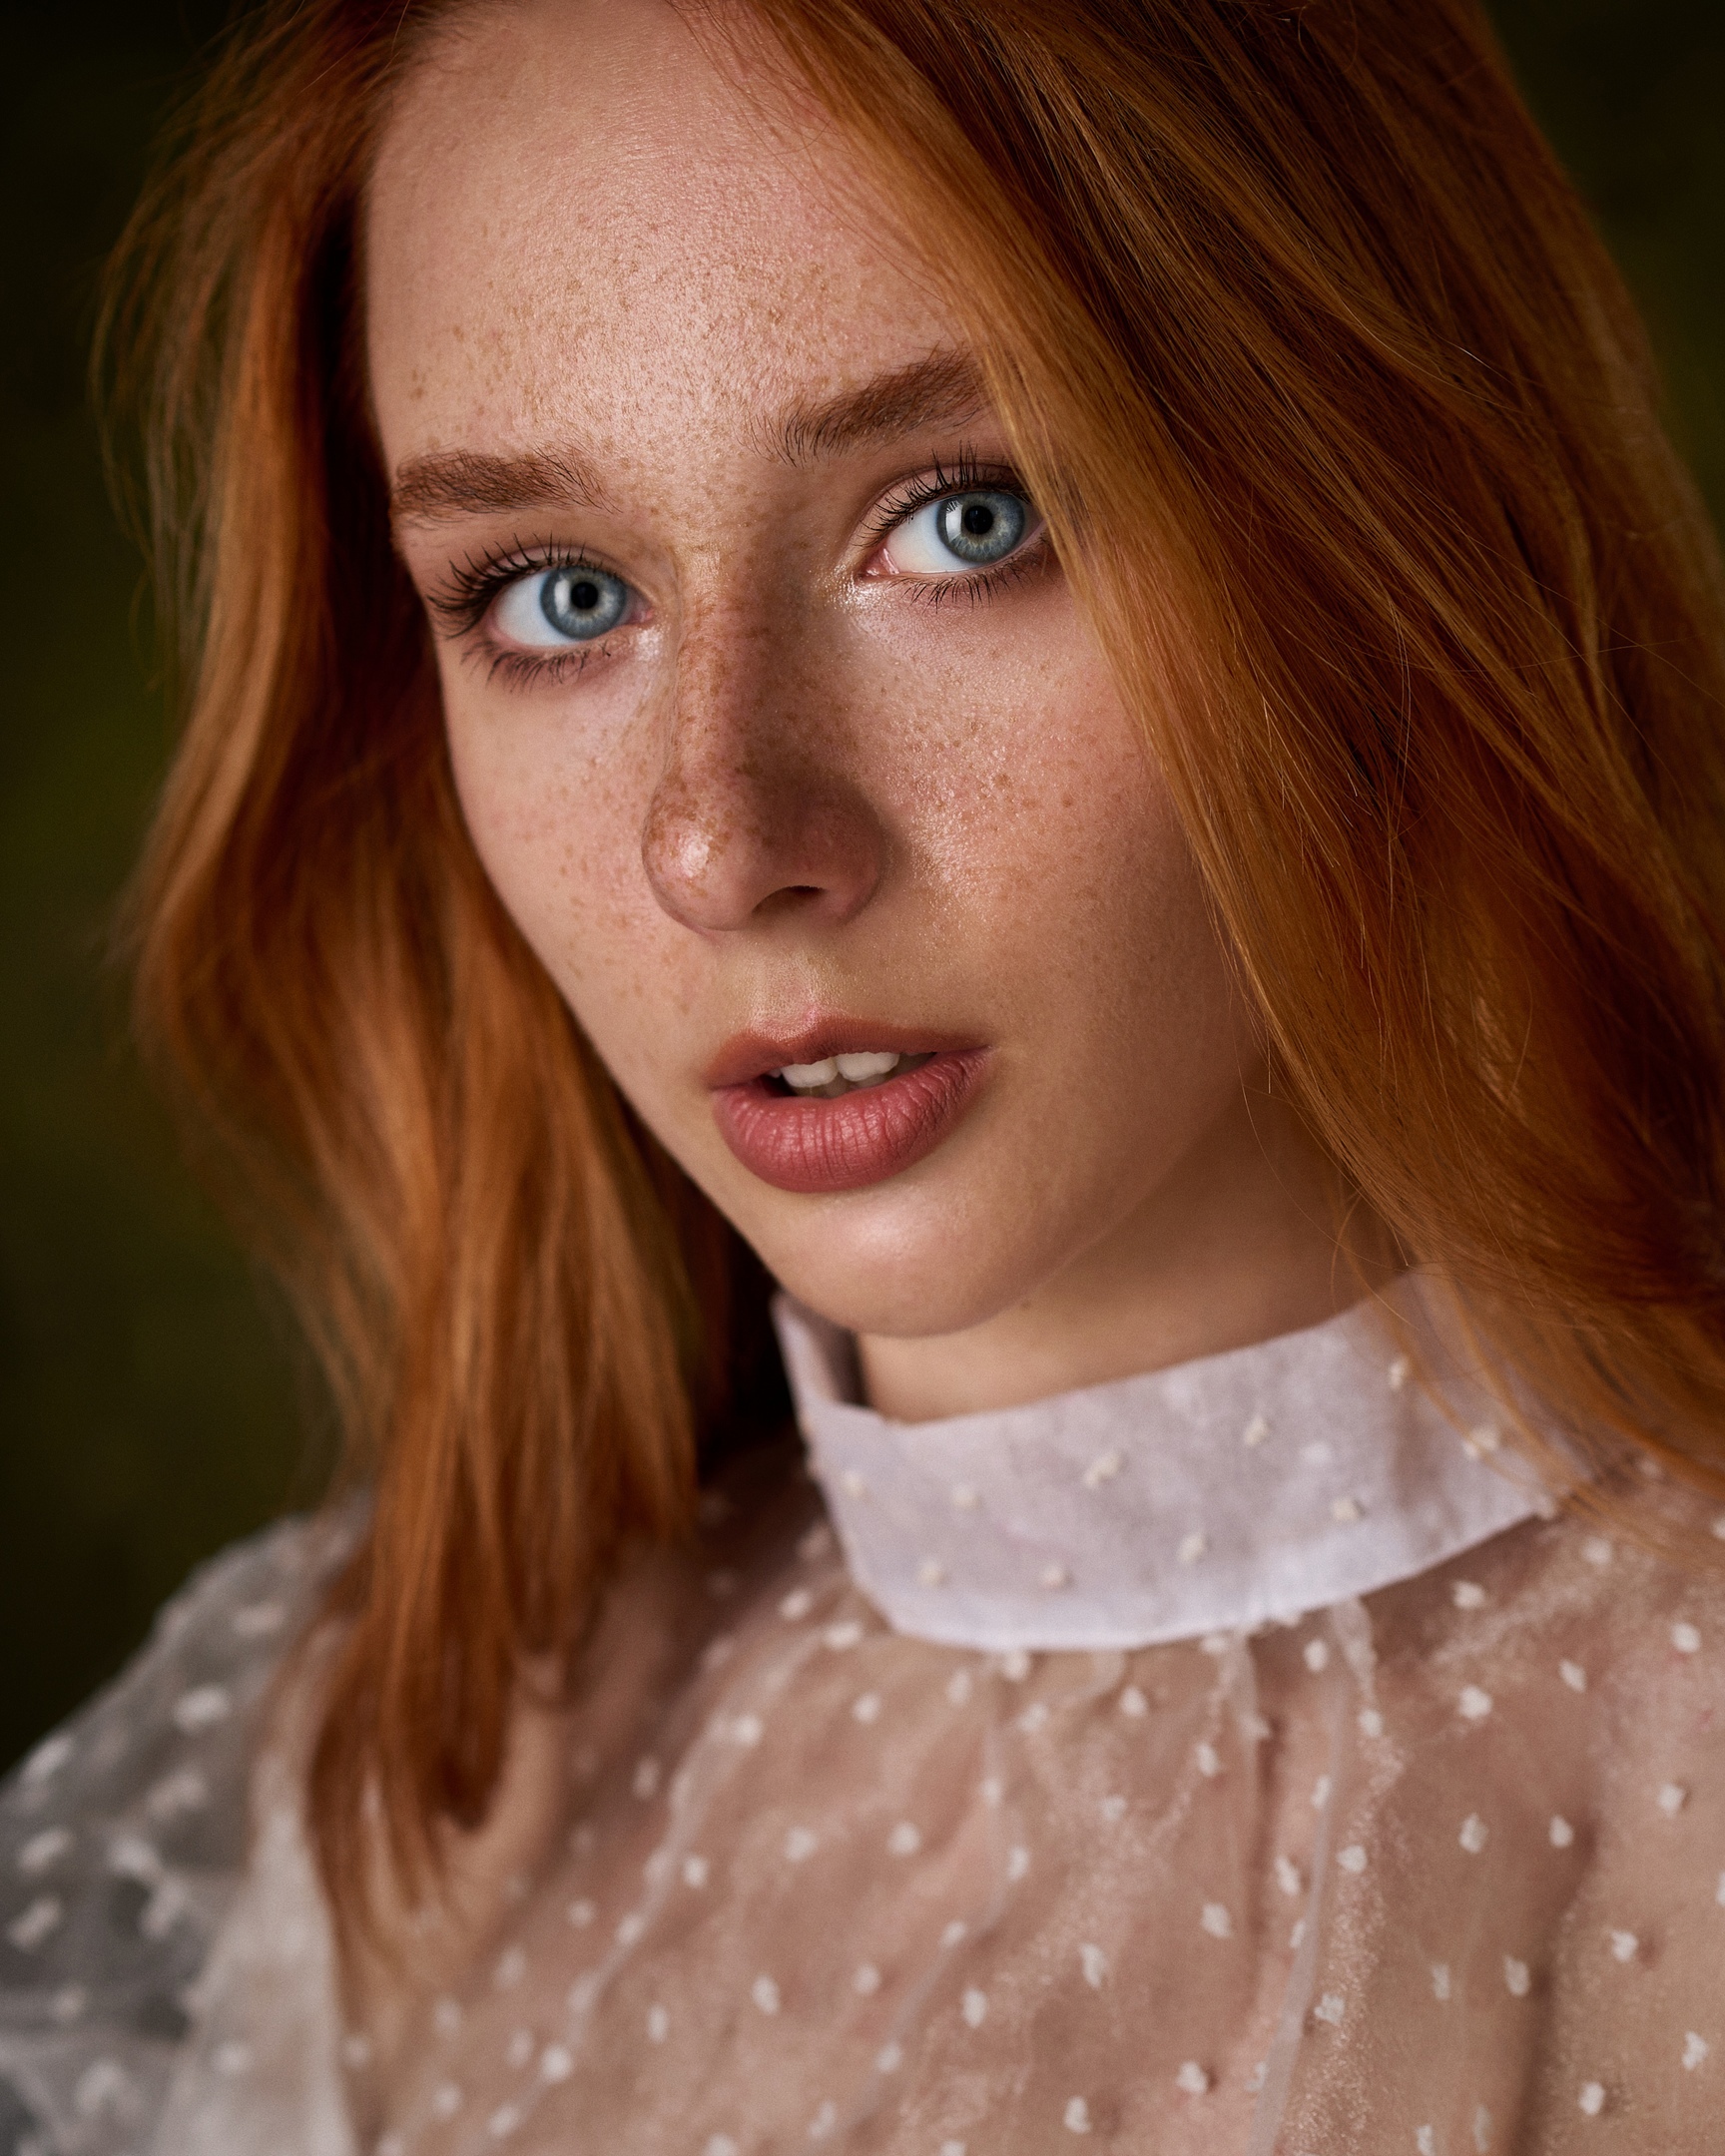 Max Pyzhik Women Redhead Freckles Portrait 1728x2160